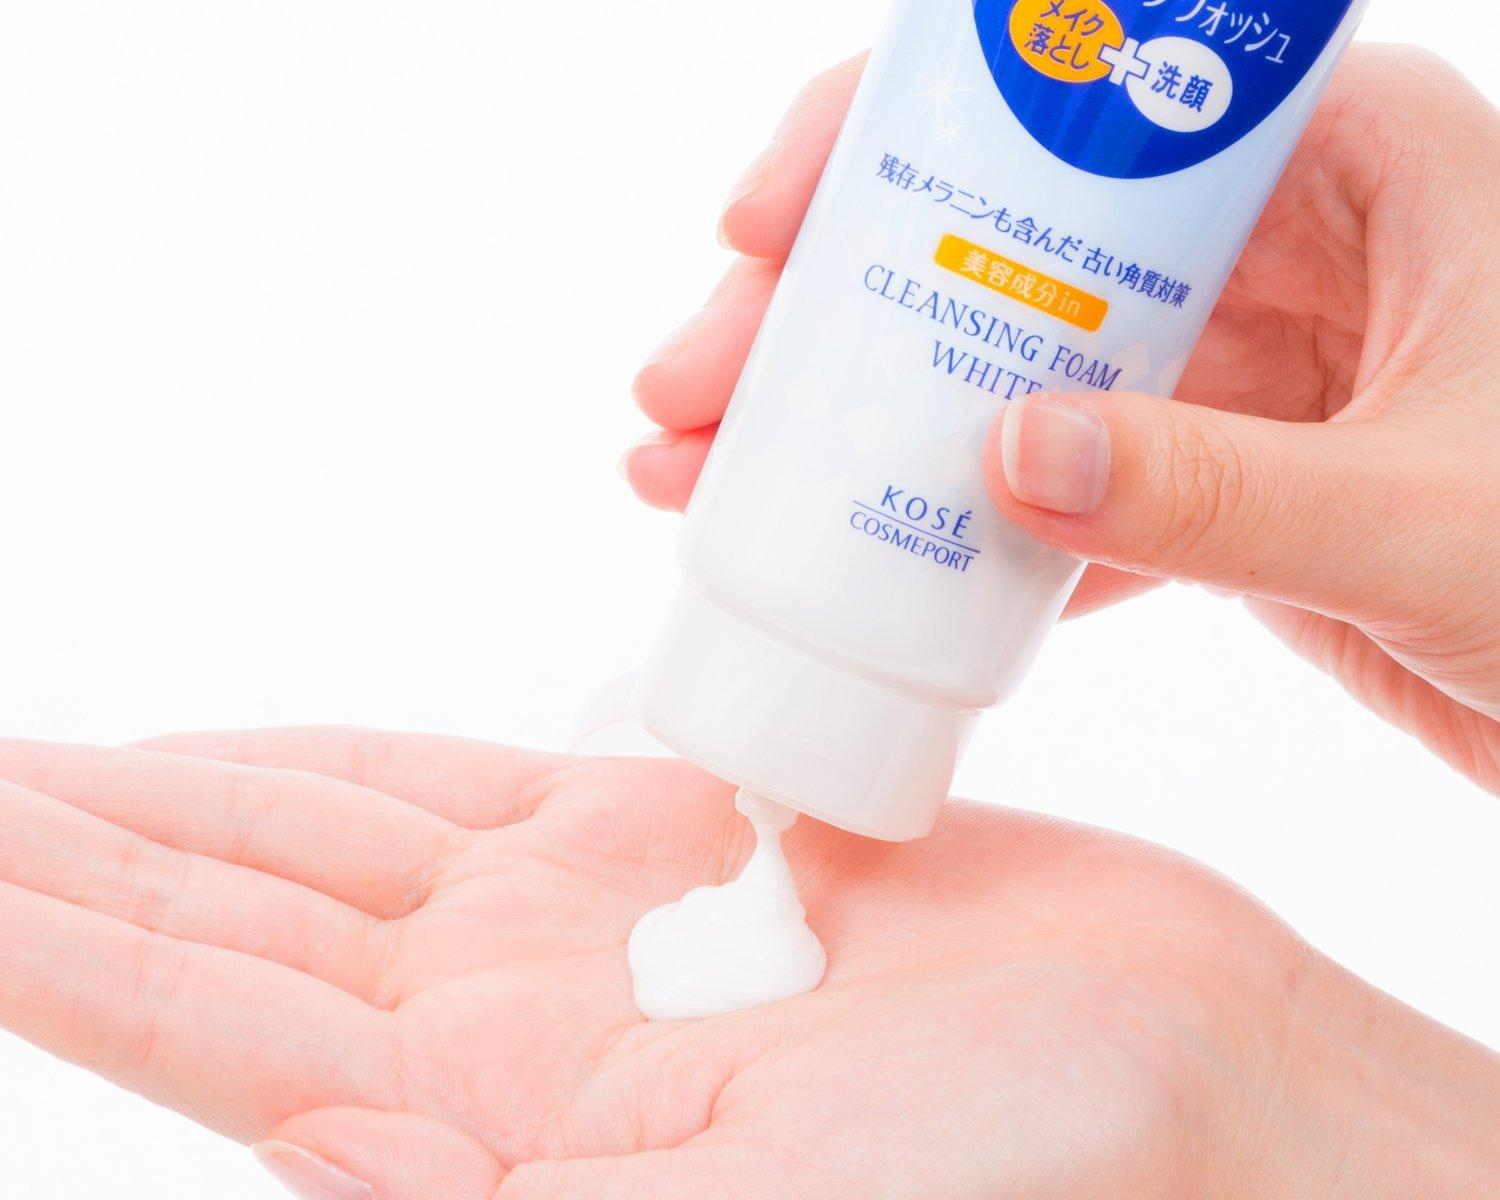 Softymo là một trong các loại sữa rửa mặt an toàn, hiệu quả đến từ Nhật Bản